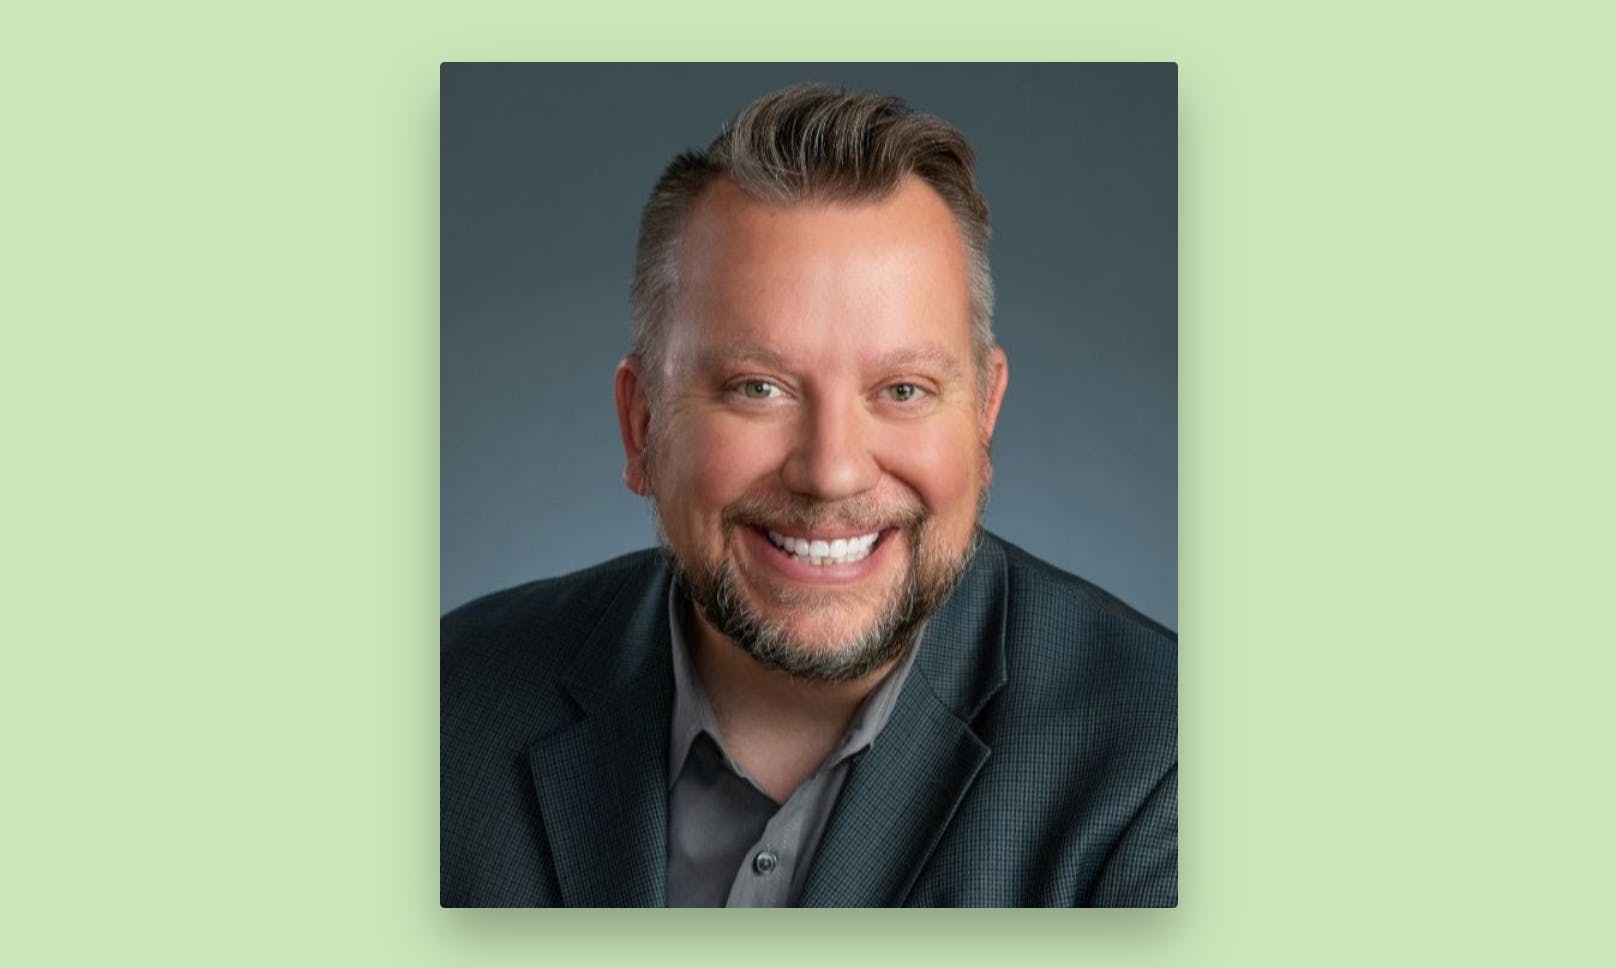 A headshot of Roman Krafzcyk, CEO of Easterseals Colorado.